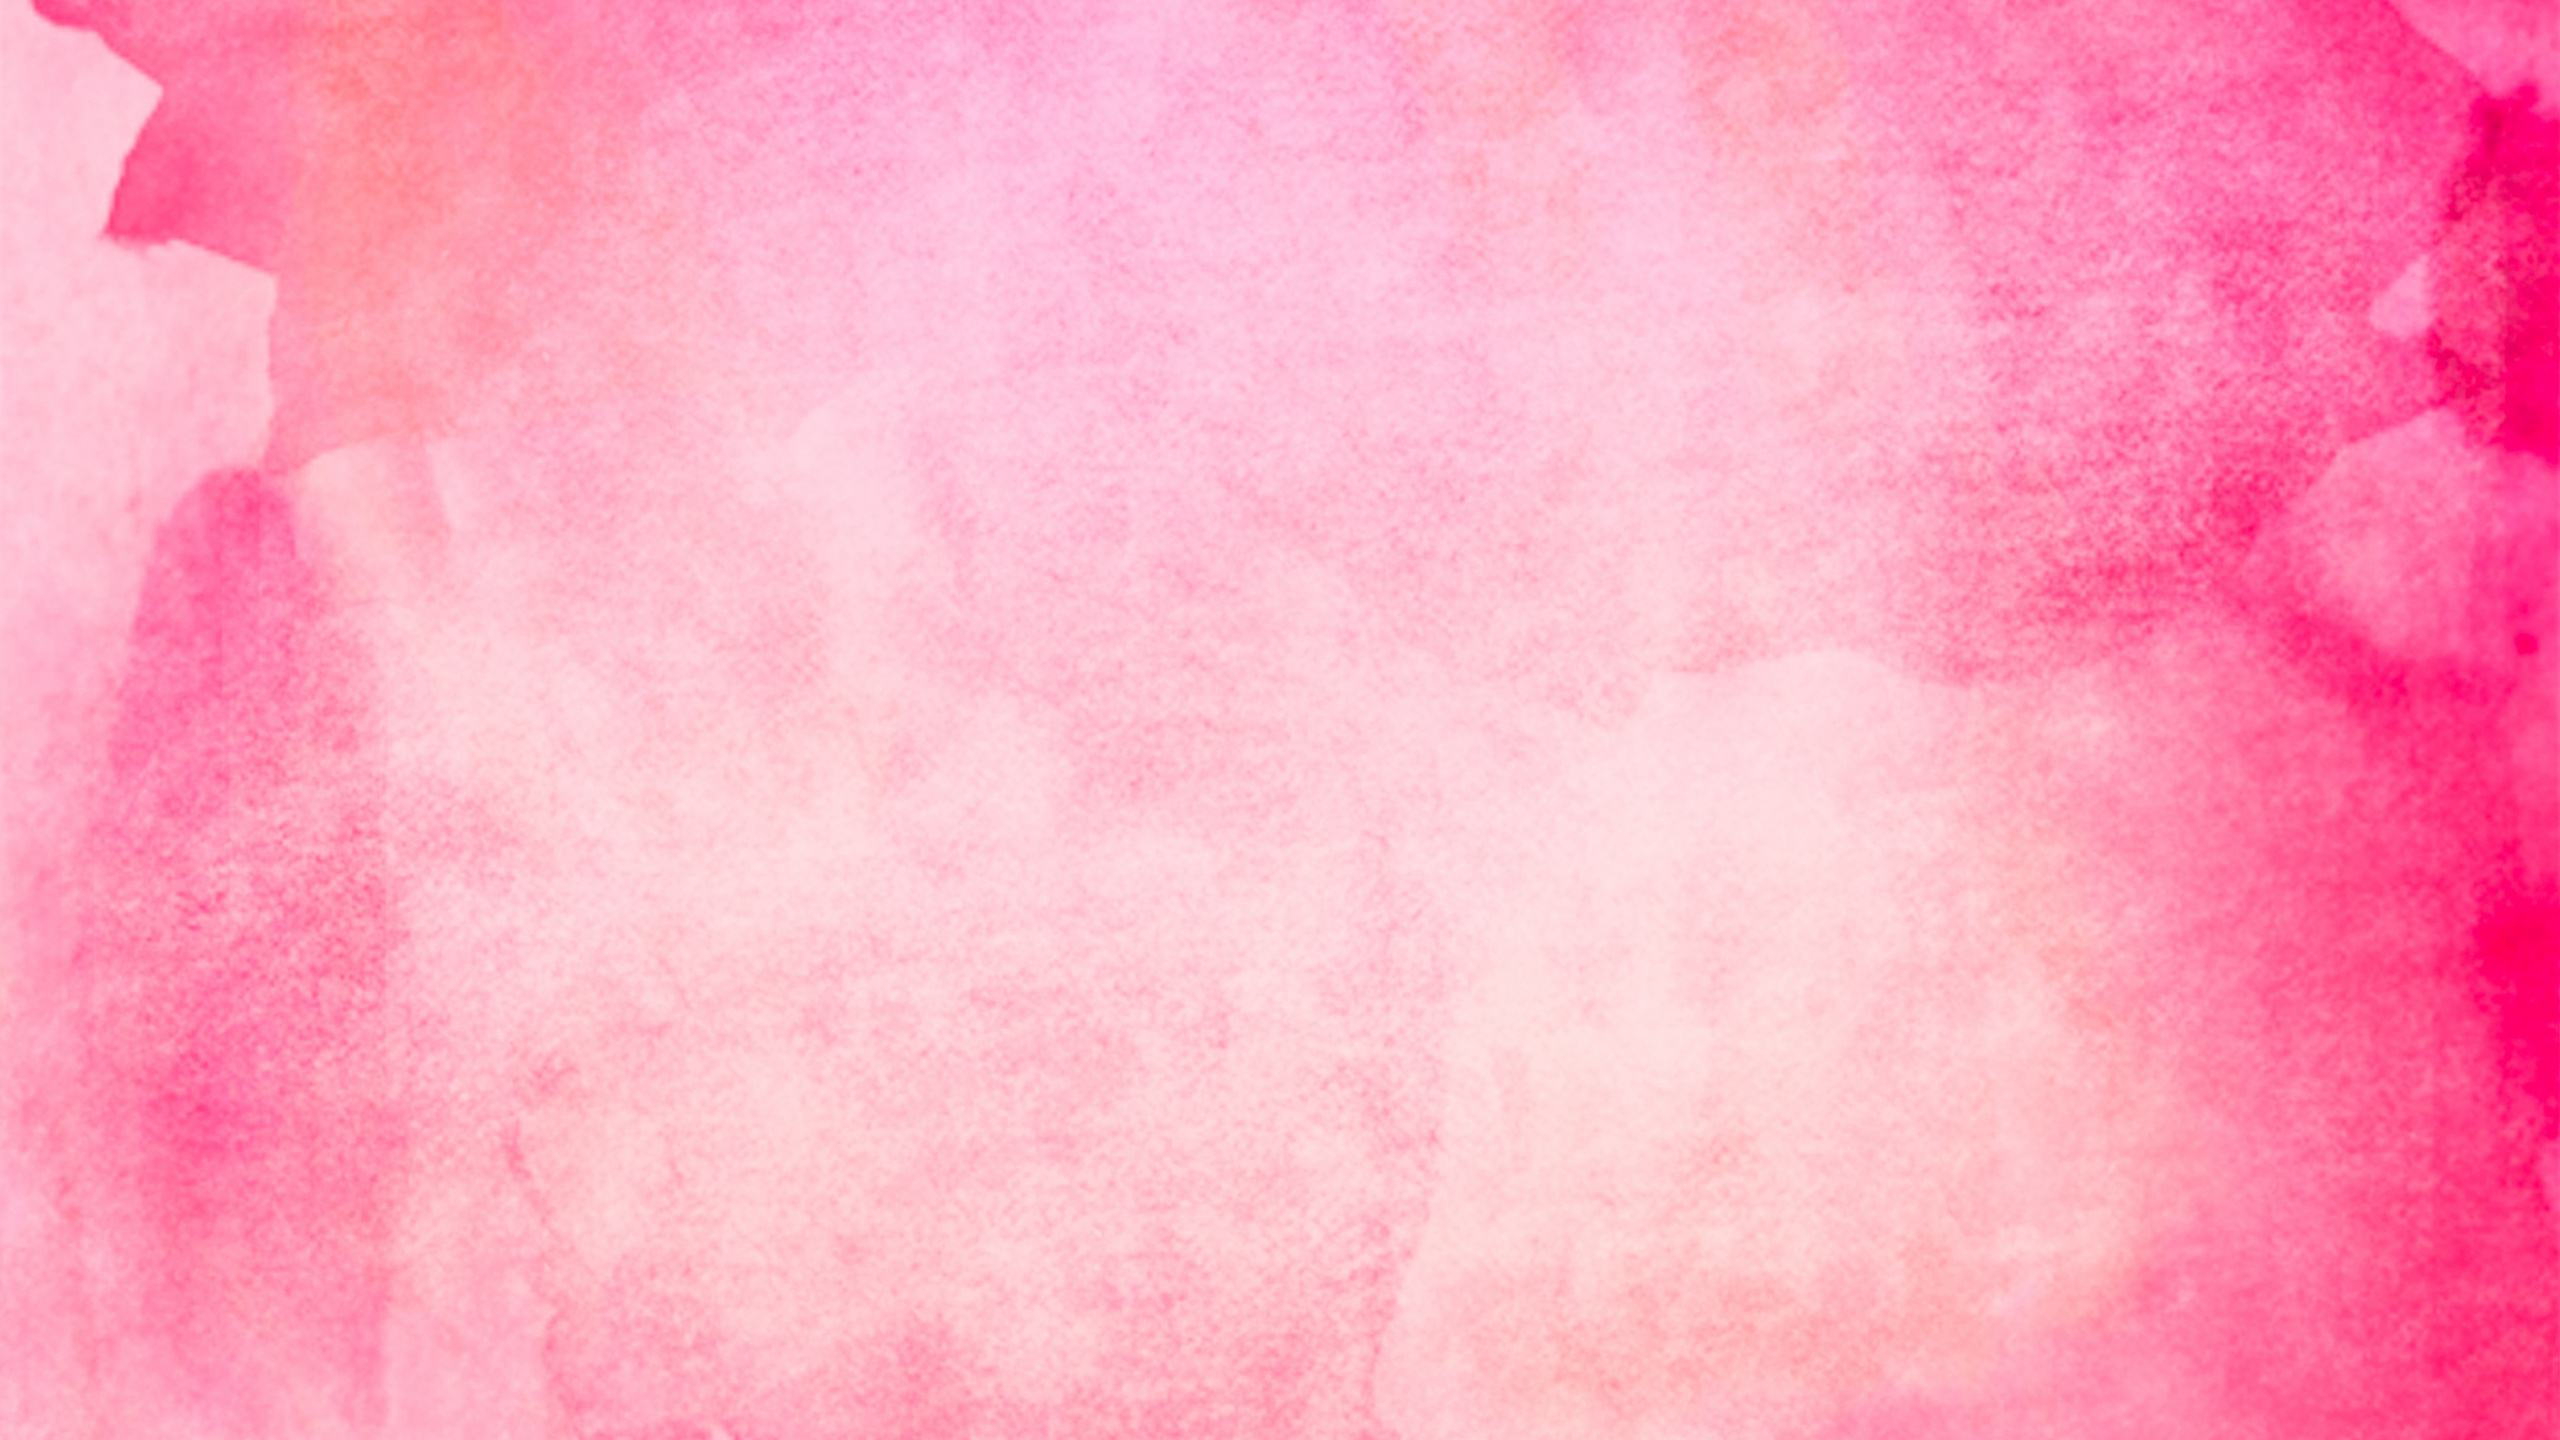 水彩画, 粉红色, 红色的, 品红色, 天空 壁纸 2560x1440 允许